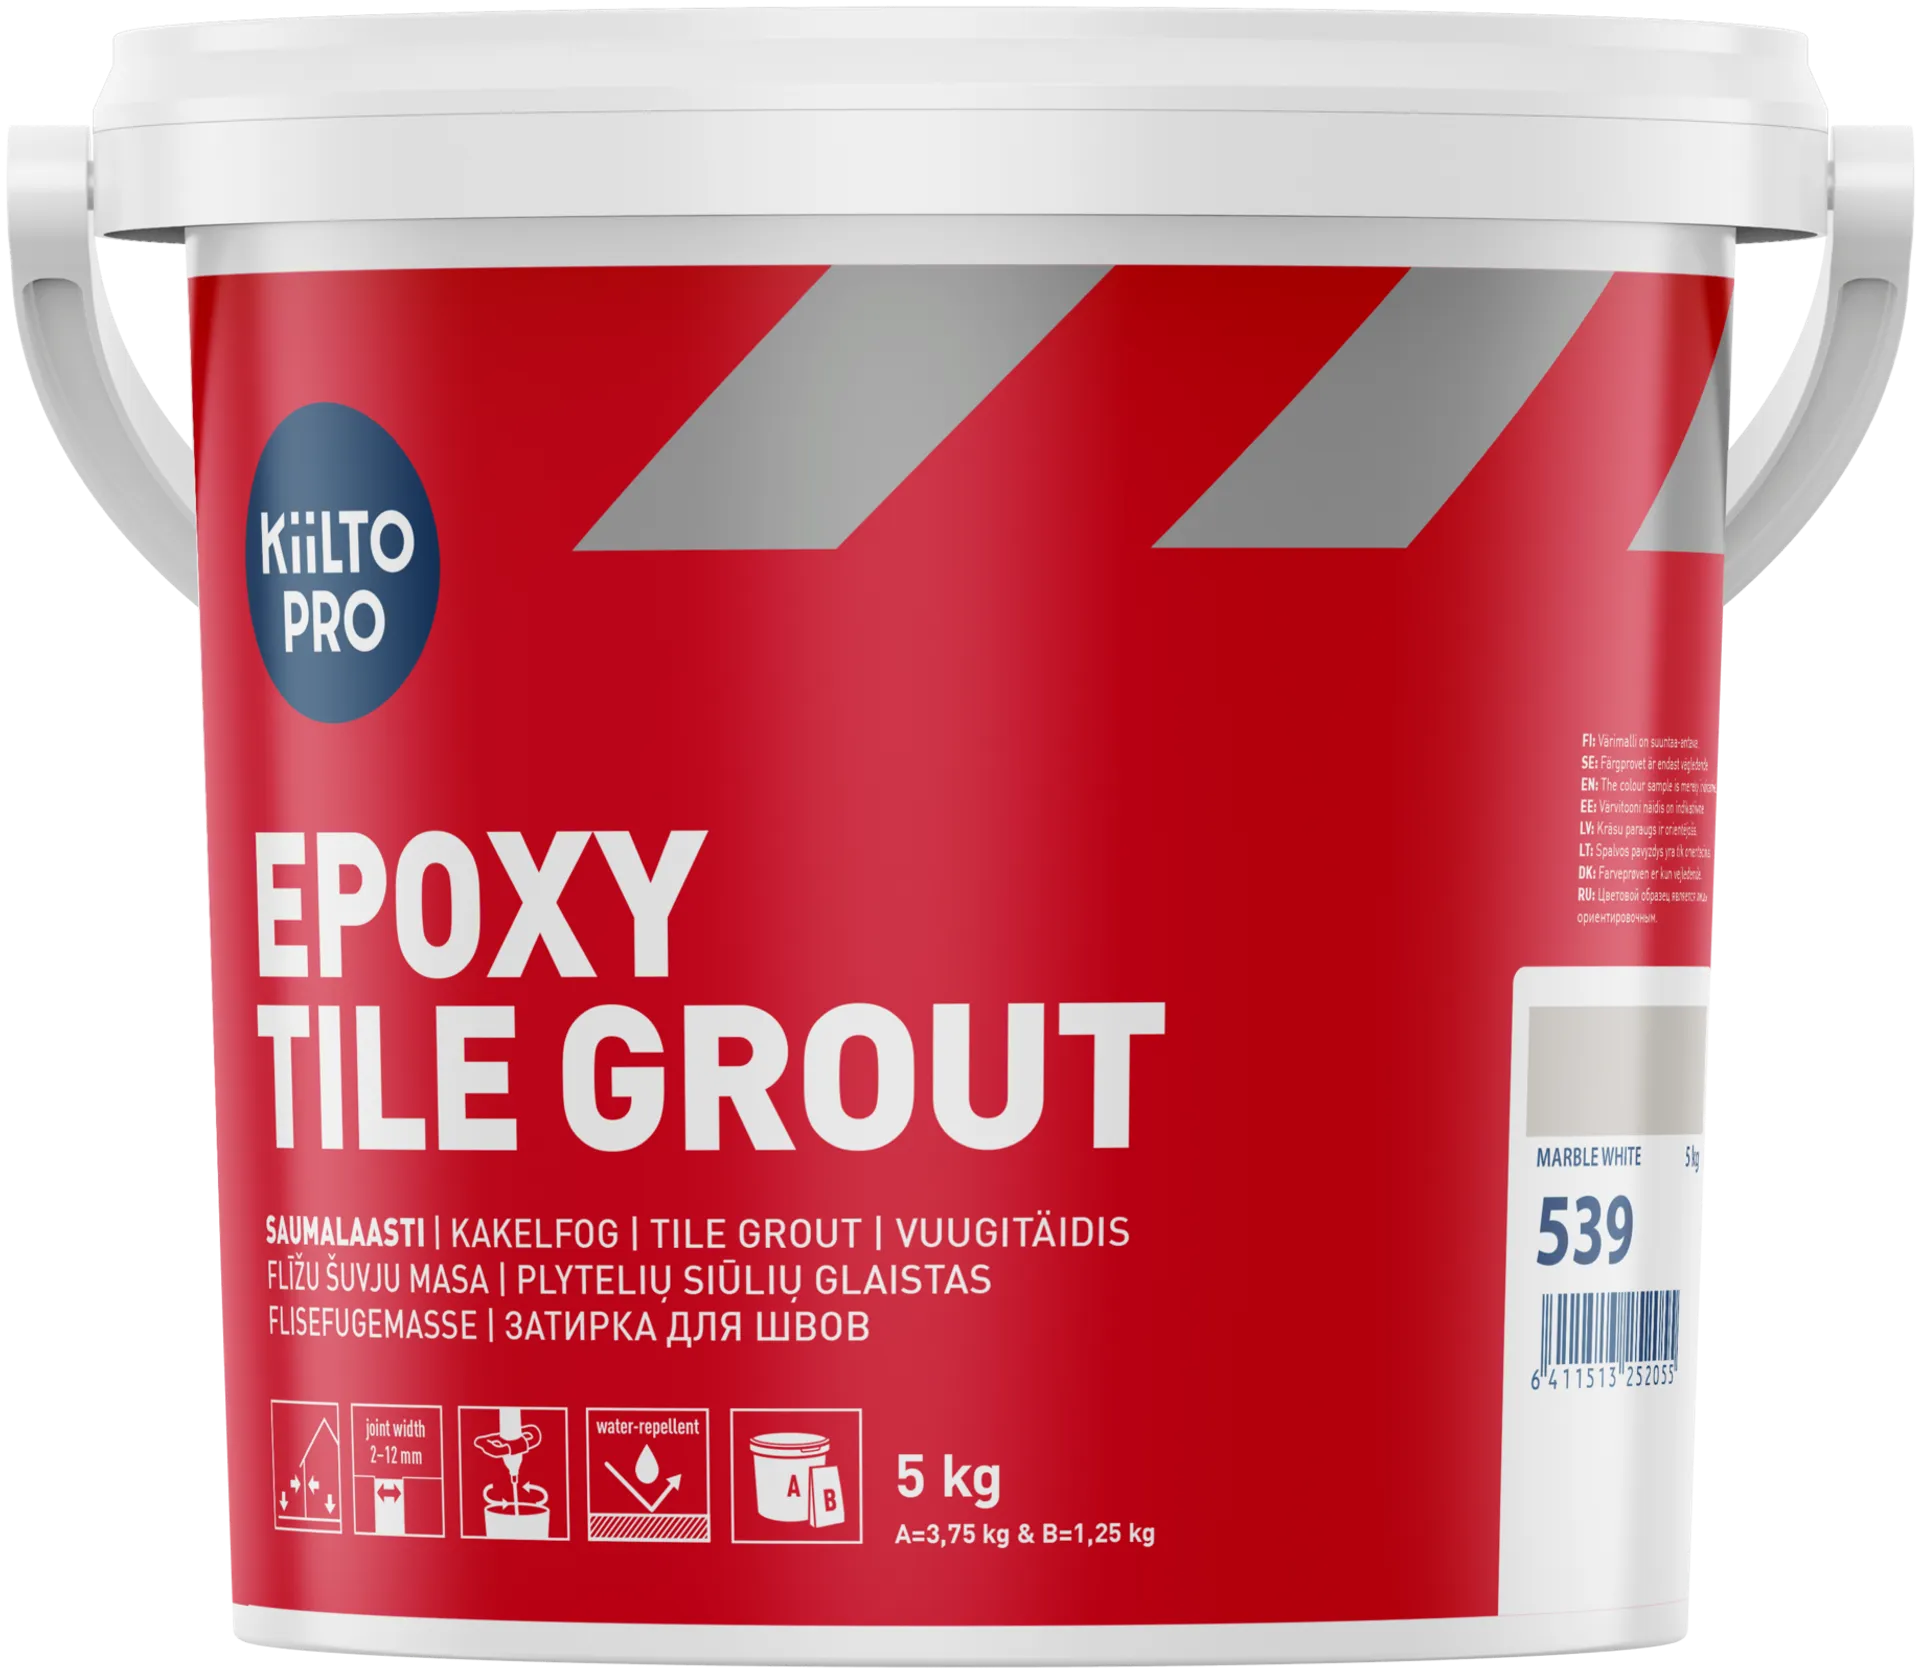 Kiilto Pro Epoxy Tile grout 539 saumalaasti marble white 5 kg